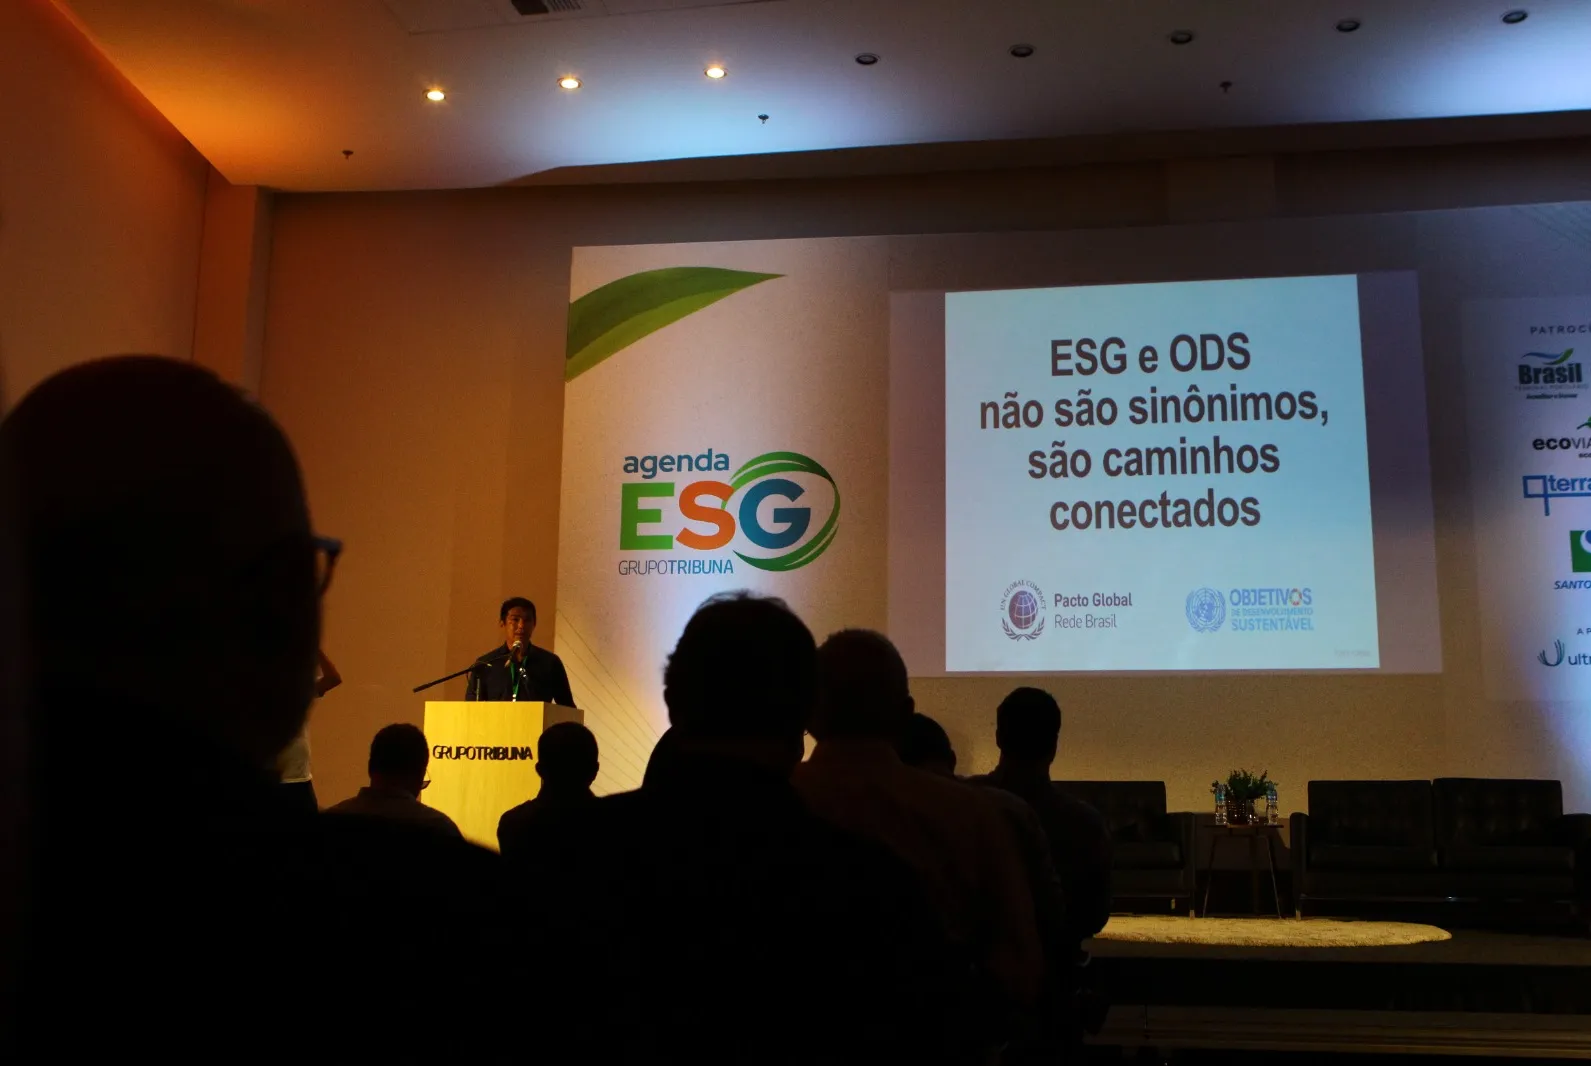 Essa é a segunda edição do projeto Agenda ESG, uma iniciativa do Grupo Tribuna. No primeiro encontro, tema foi o meio ambiente